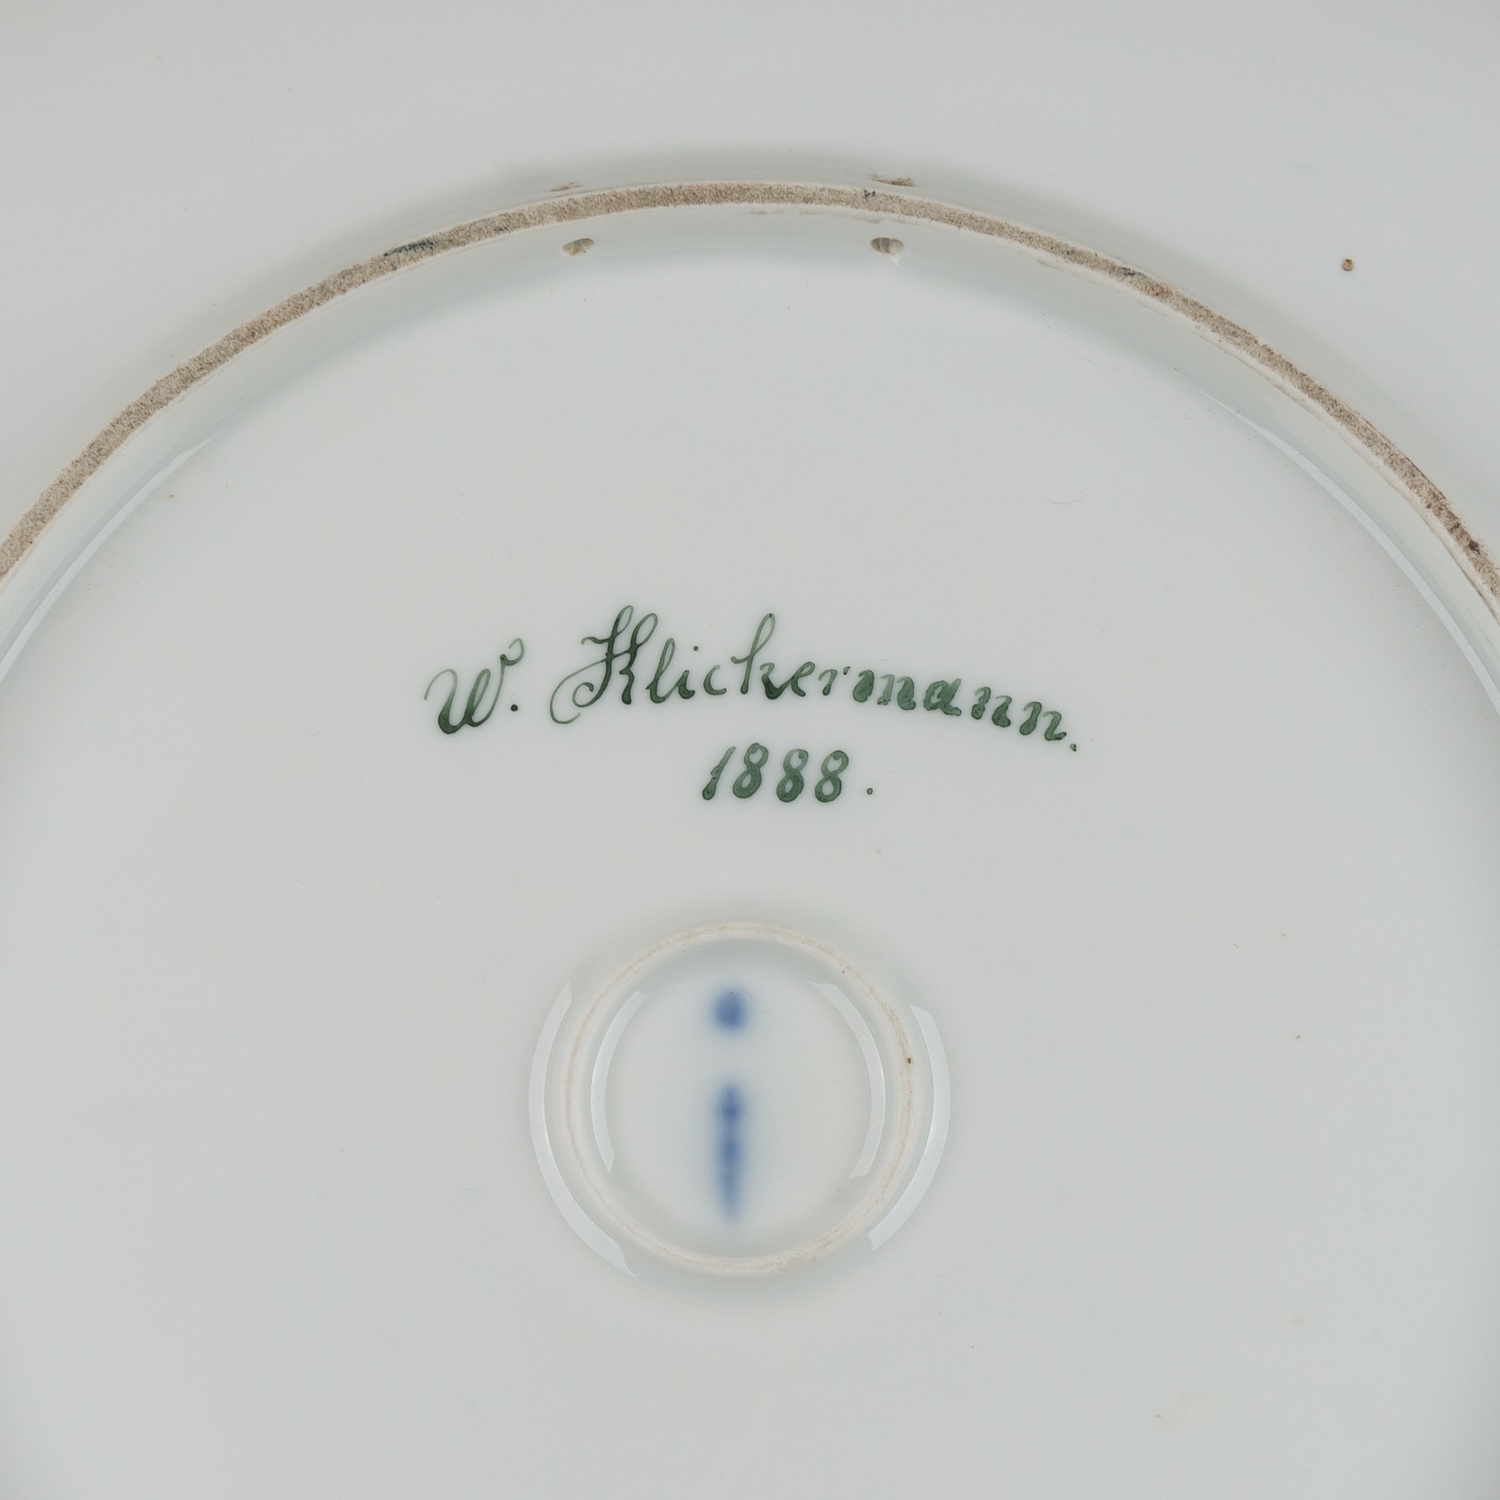 (KPM) Блюдо настенное «Влюбленные».  <br>Германия, Берлин, Королевская фарфоровая мануфактура (KPM), художник - Wilhelm Klickermann, 1888.